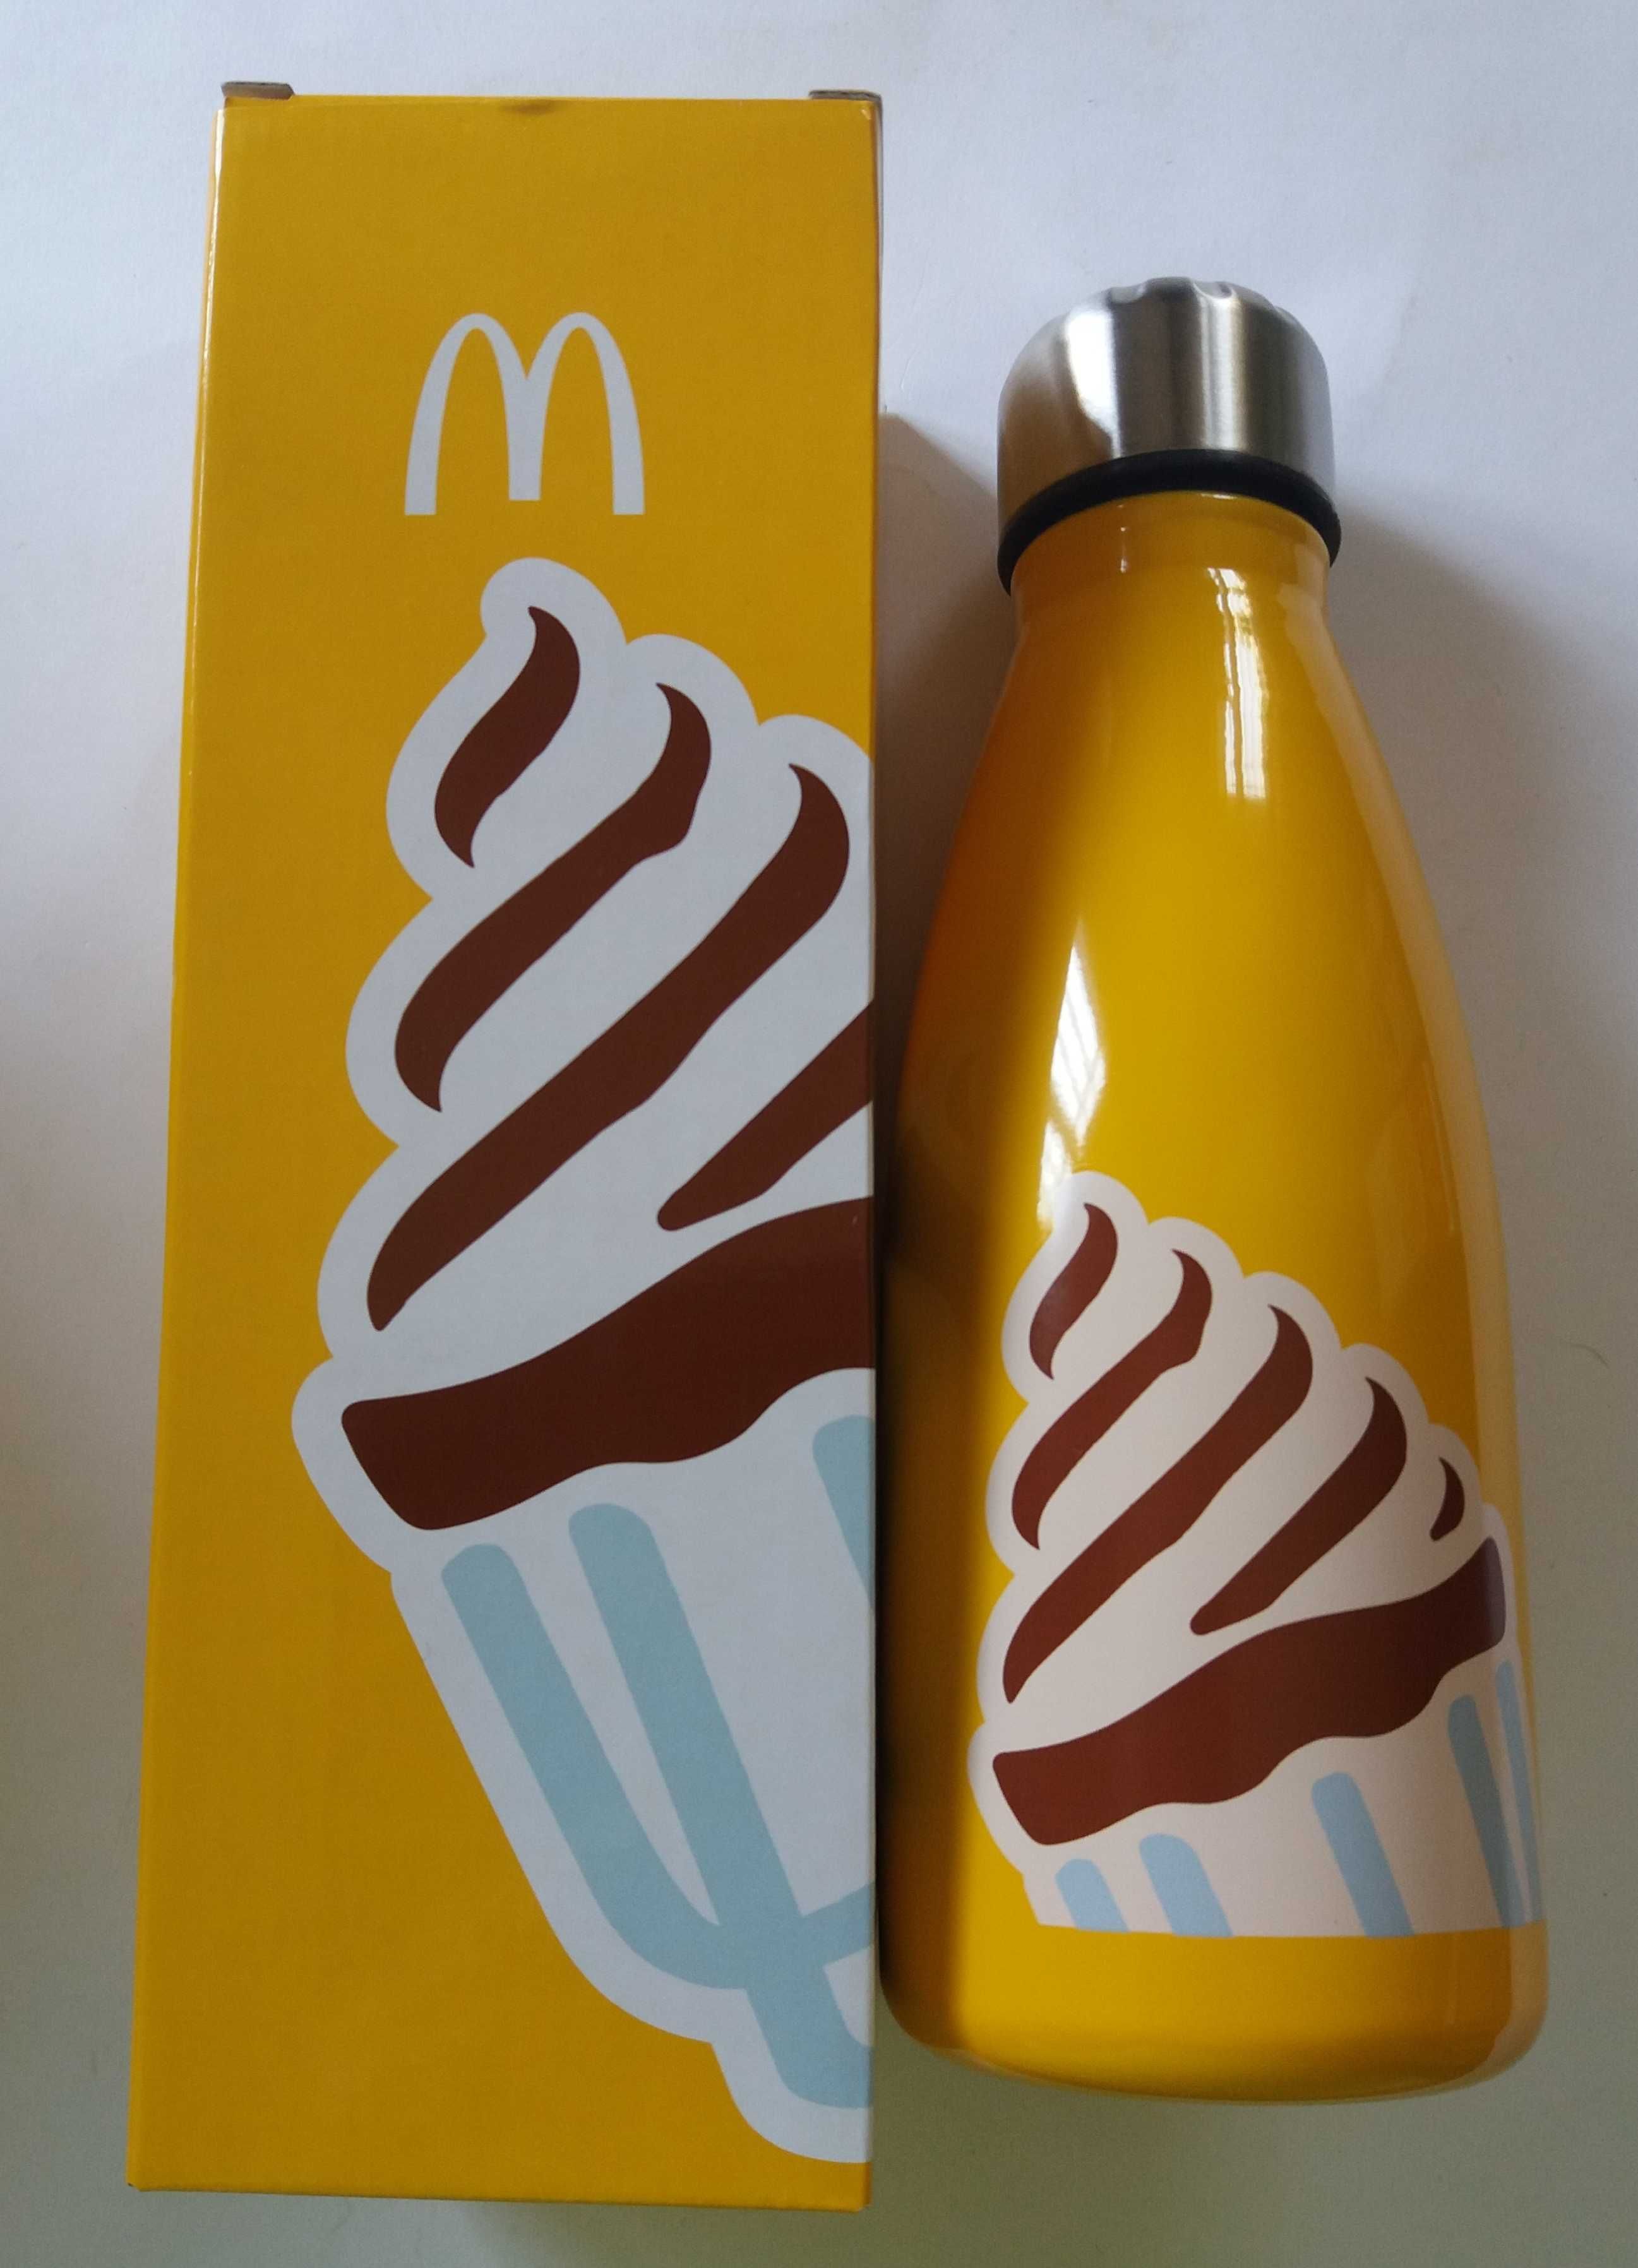 Novo preço-McDonald’s 30 ano ofi garrafa aço inoxidável 550ml- 5€ c/